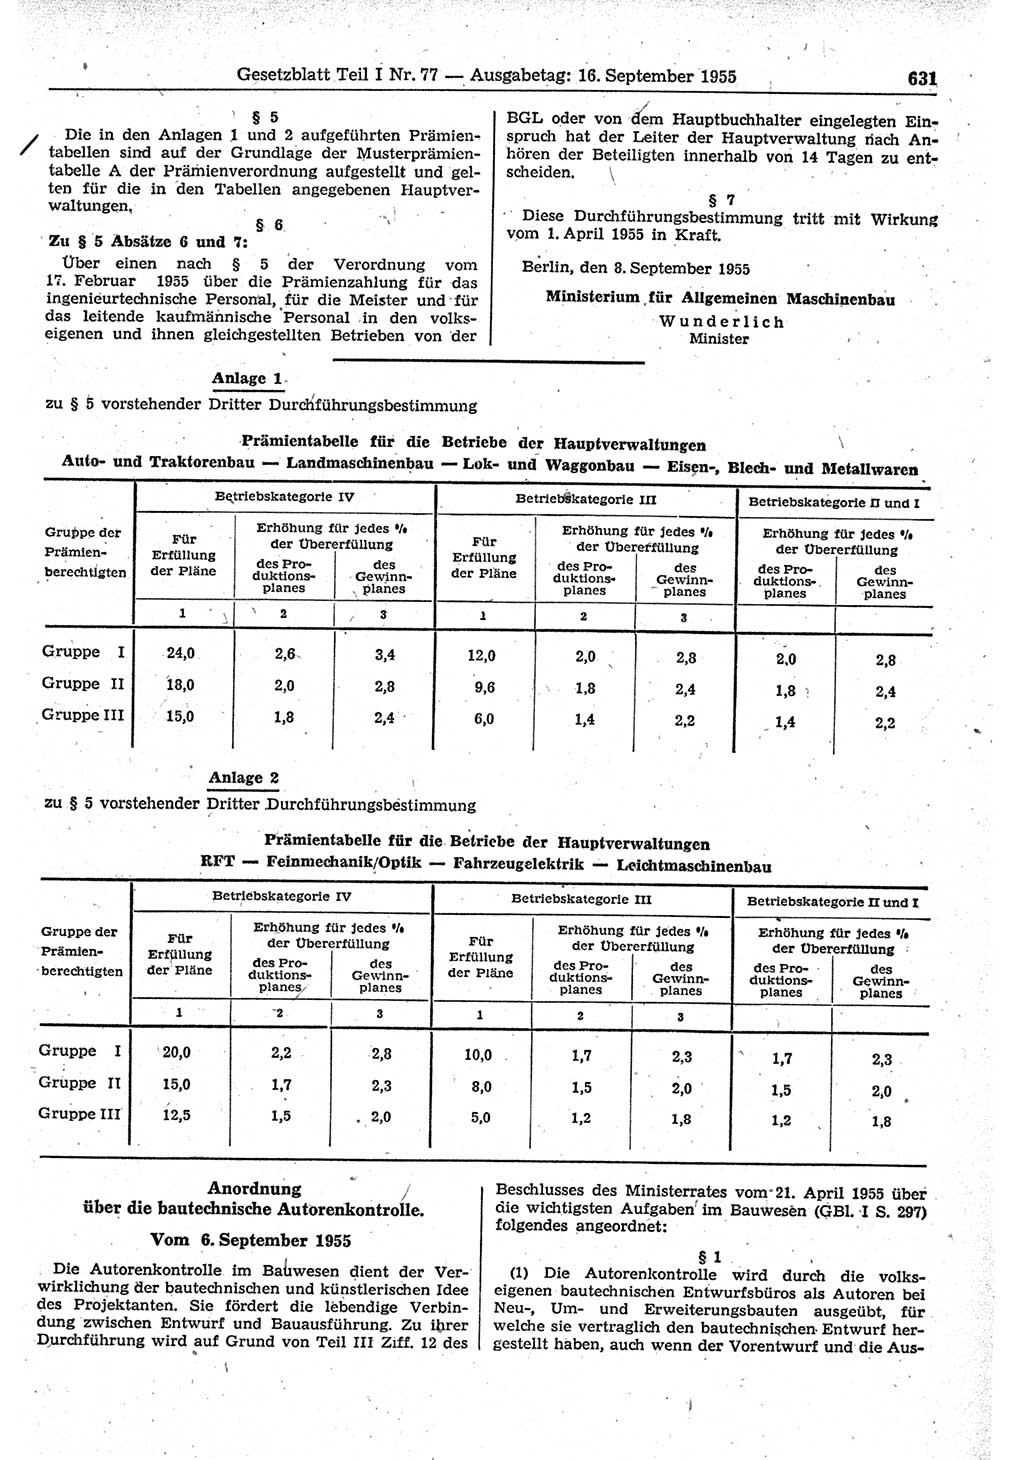 Gesetzblatt (GBl.) der Deutschen Demokratischen Republik (DDR) Teil Ⅰ 1955, Seite 631 (GBl. DDR Ⅰ 1955, S. 631)